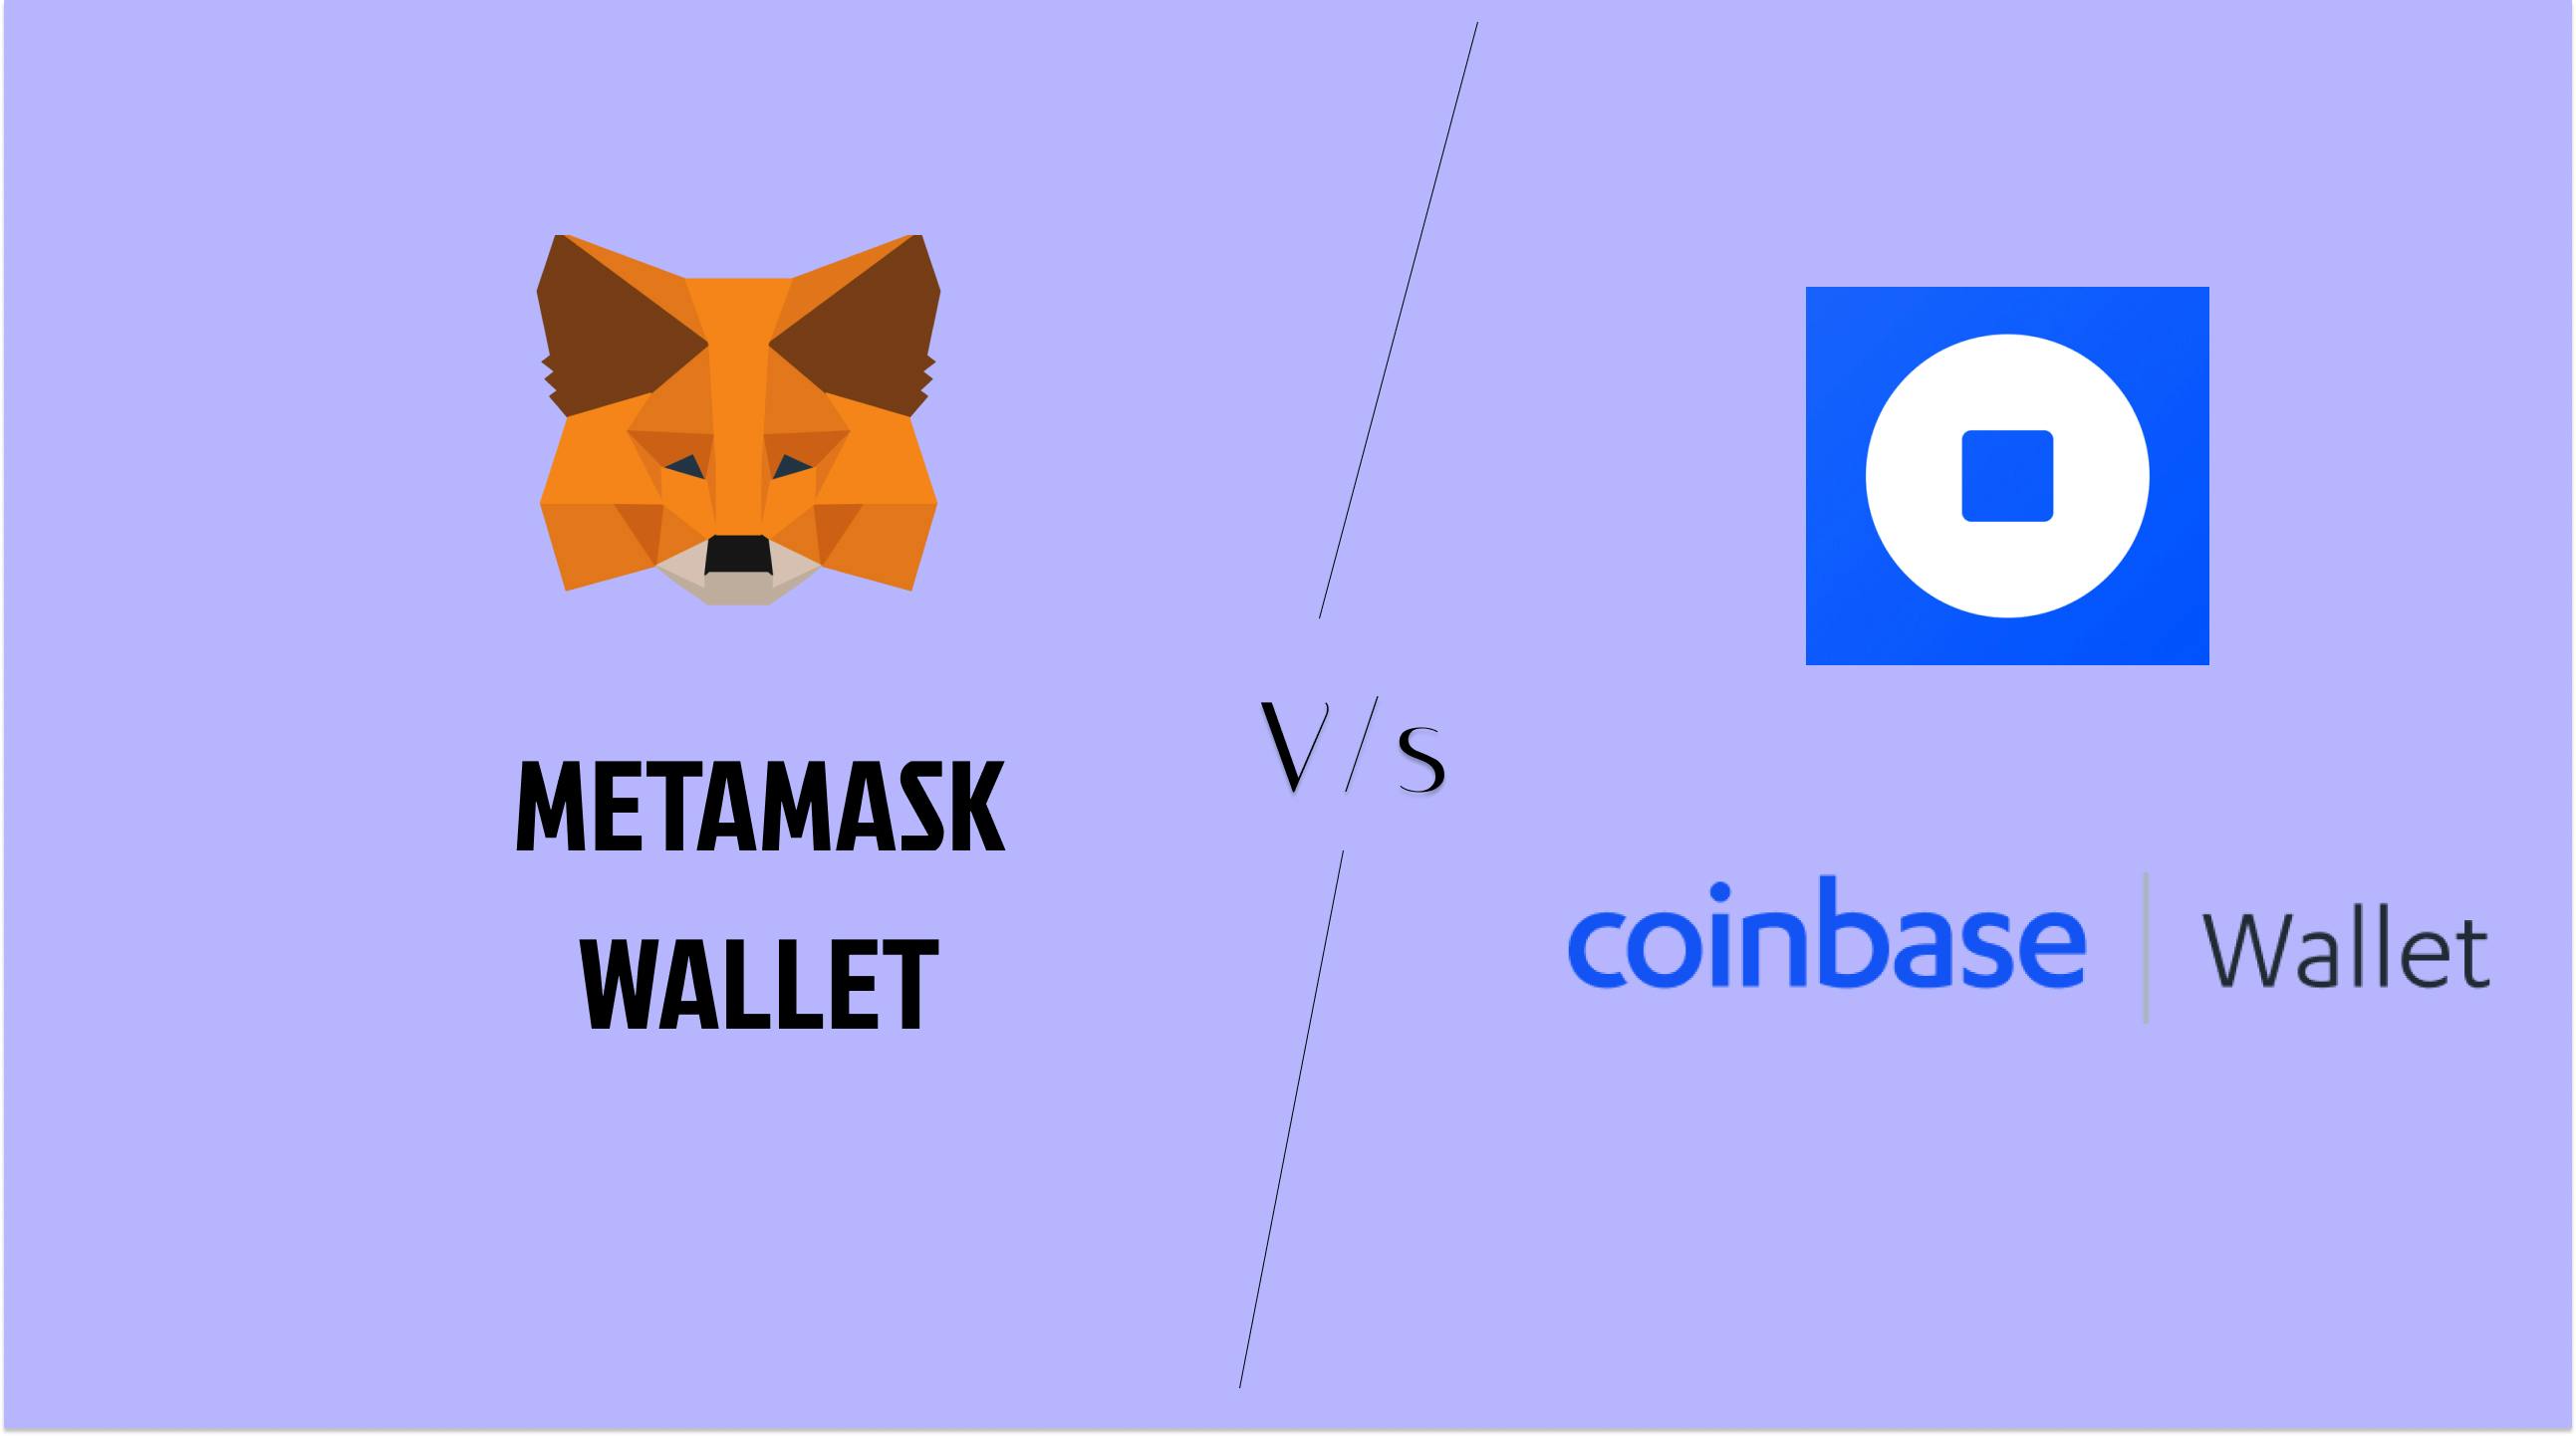 Metamask vs Coinbase wallet